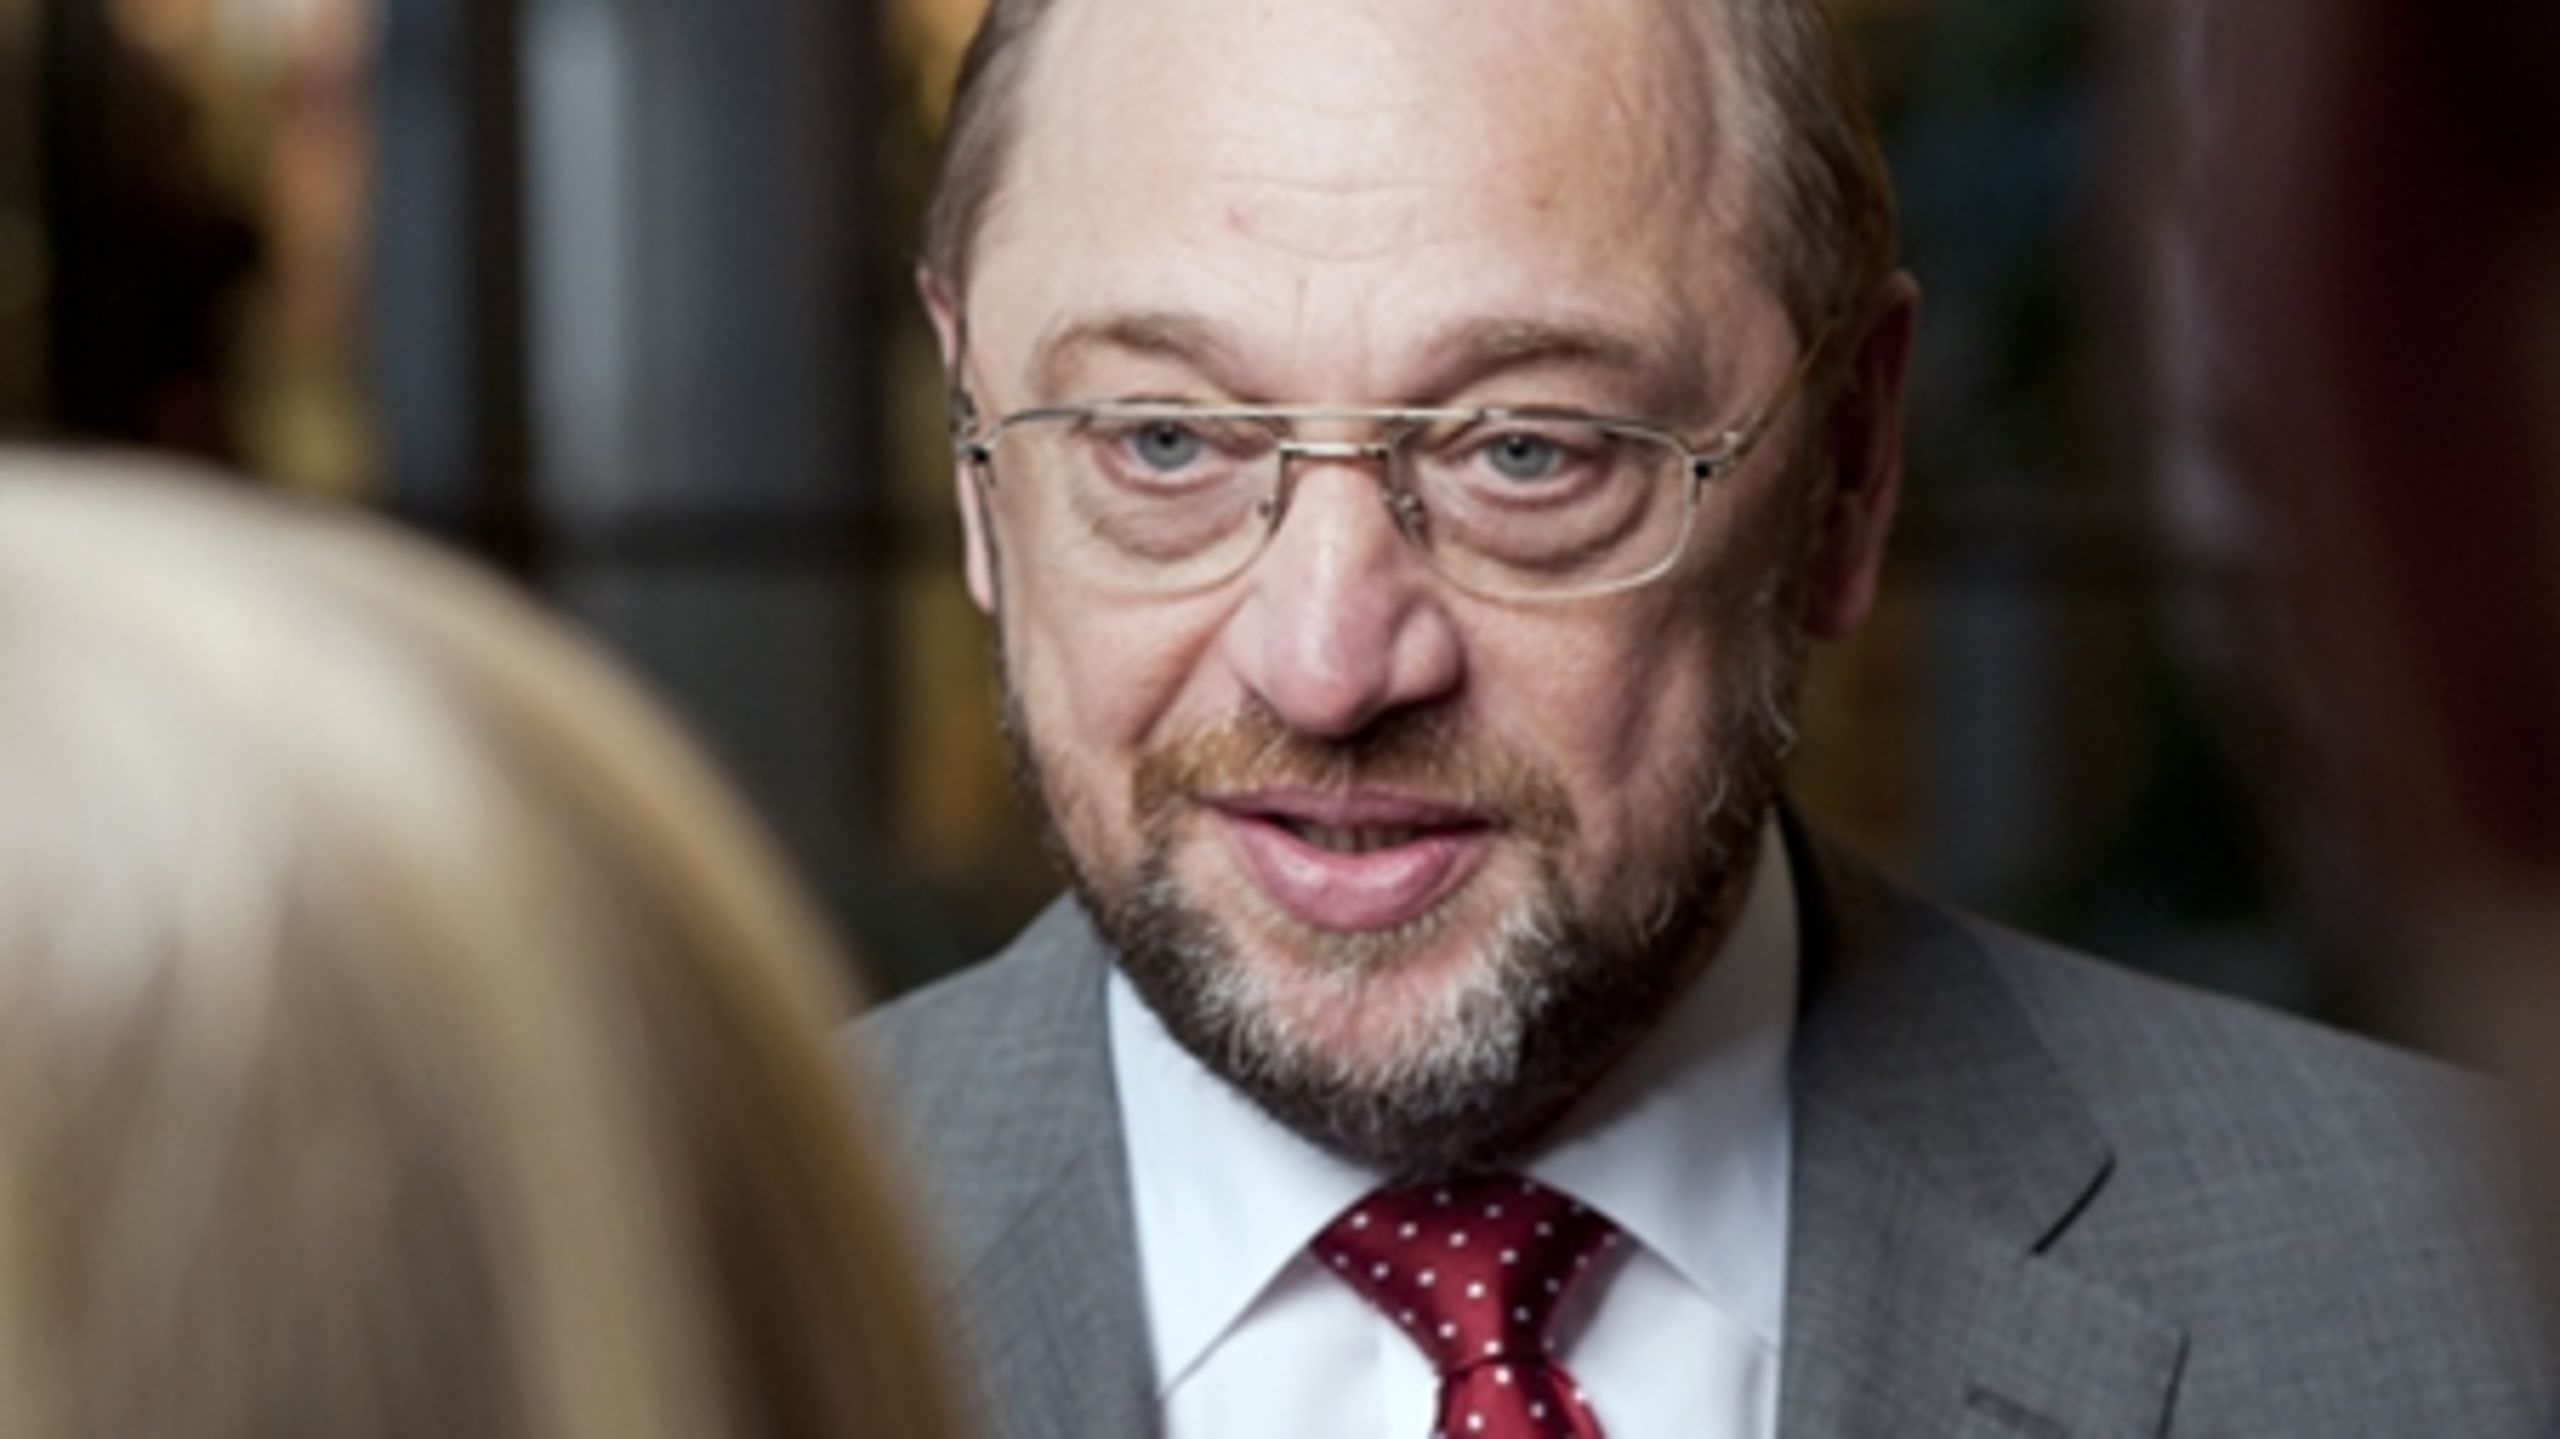 Socialdemokratiske Martin Schulz er i øjeblikket Europa-Parlamentets formand. Han overtog posten fra konservative Jerzy Buzek midt i valgperioden.